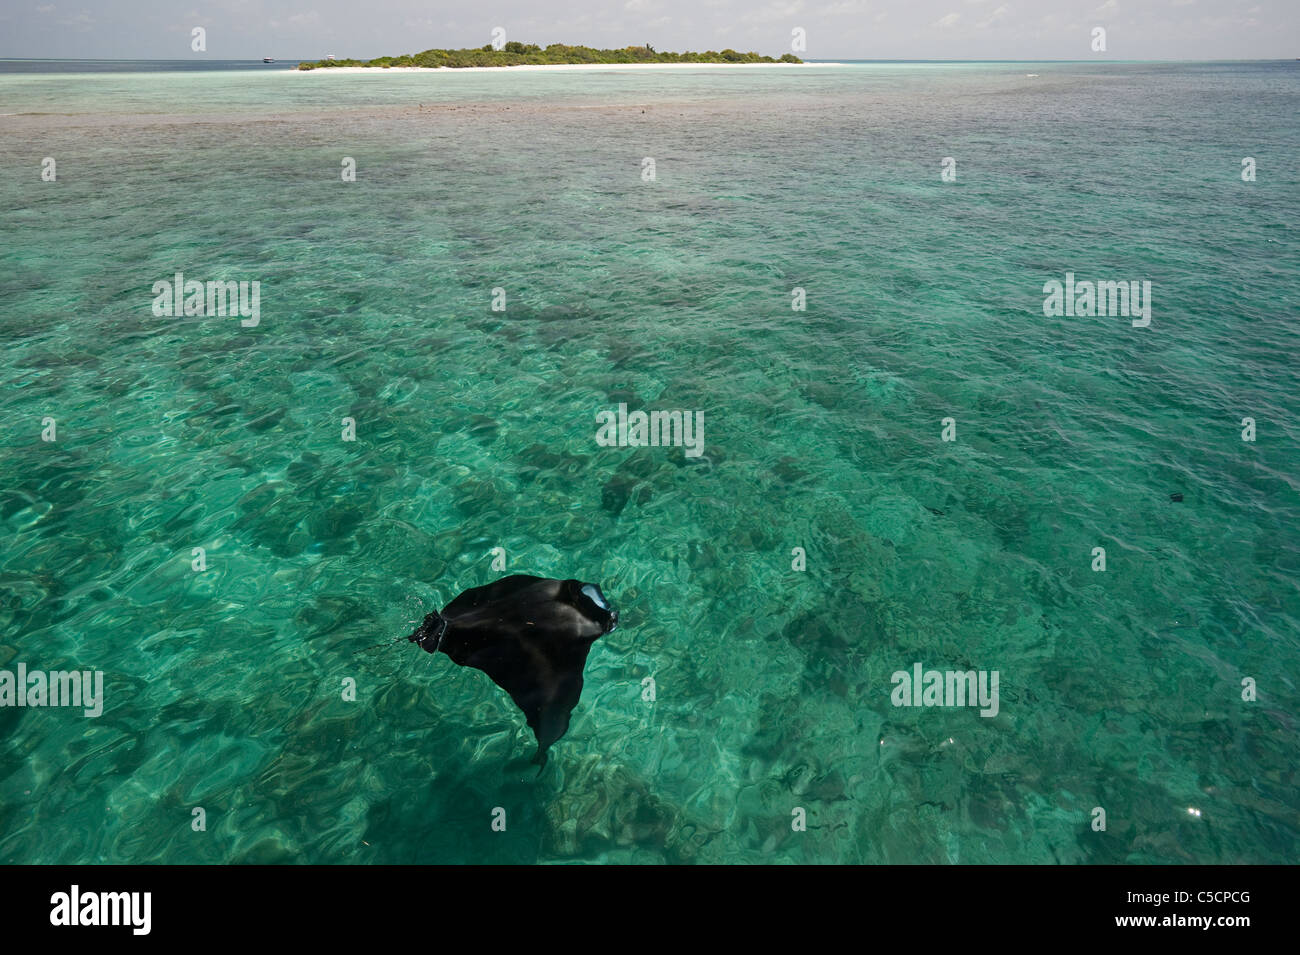 Manta Ray se nourrissant de plancton, avec en arrière-plan l'Île Hanifaru Hanifaru, lagune, l'atoll de Baa, Maldives Banque D'Images